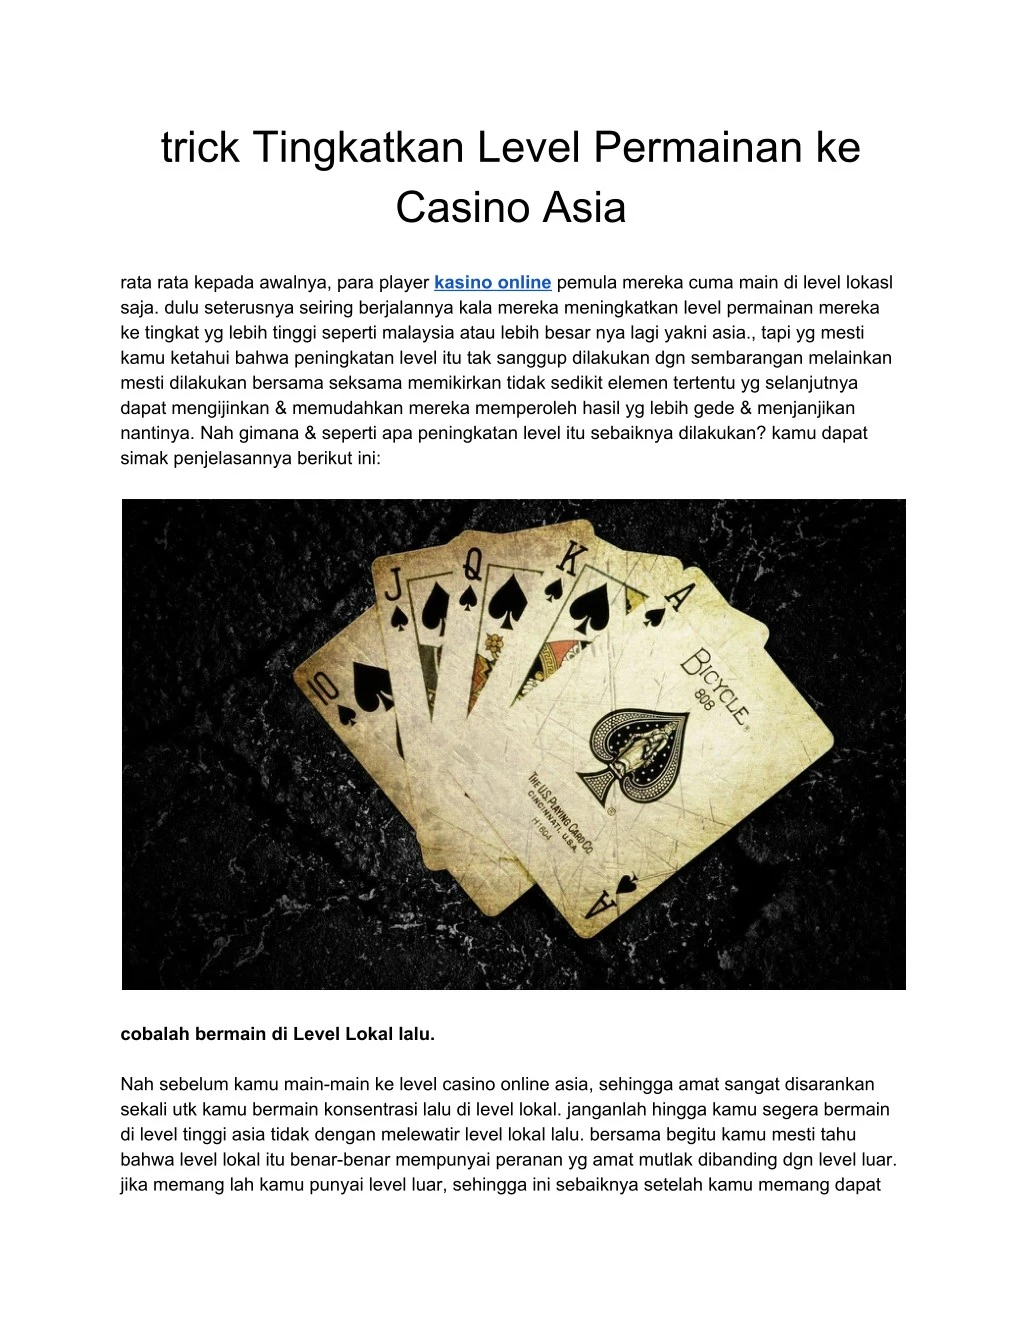 trick tingkatkan level permainan ke casino asia